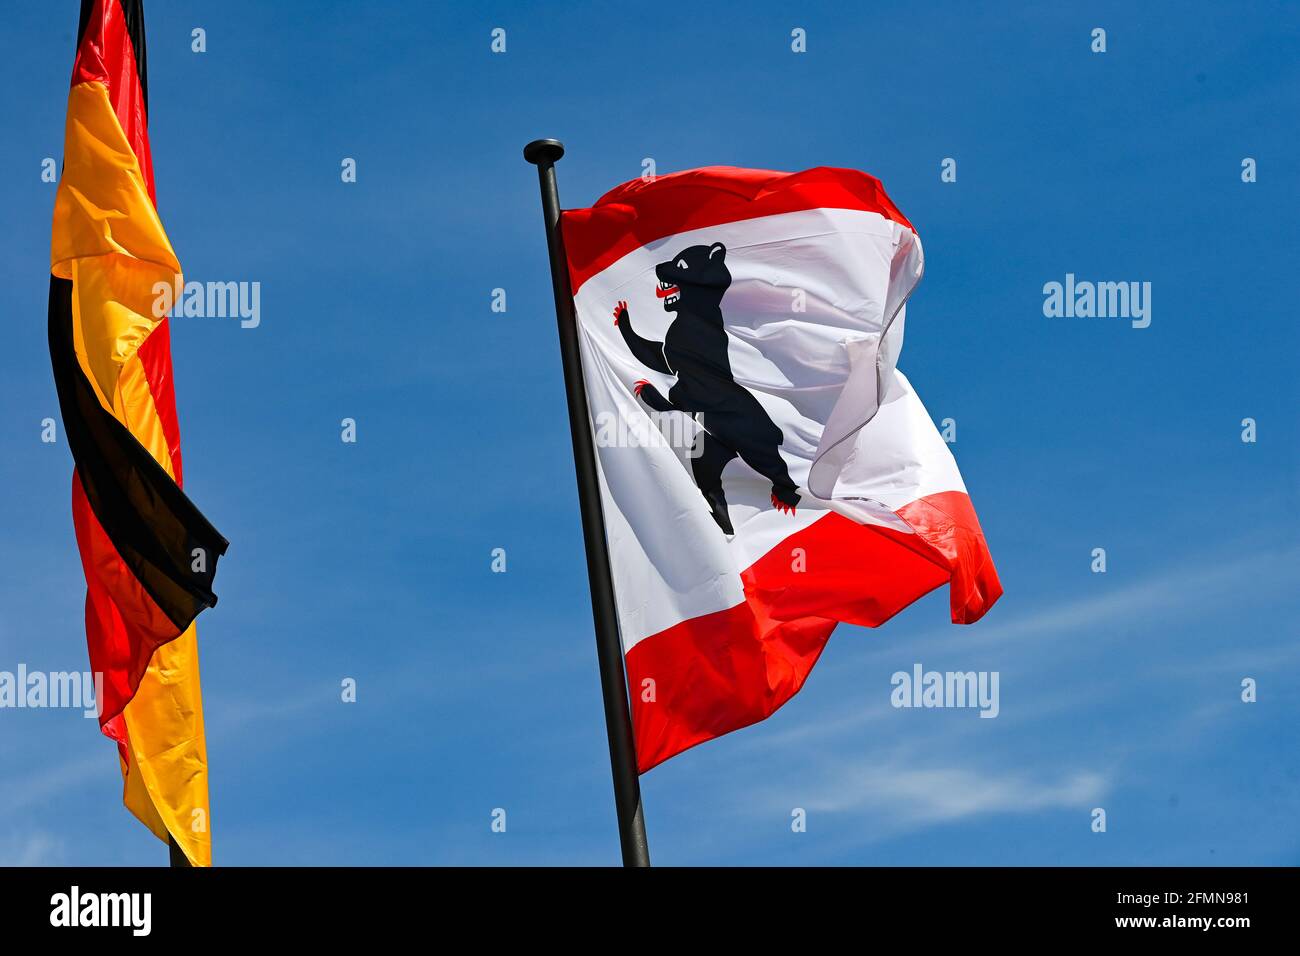 Berlin, Deutschland. Mai 2021. Die deutsche Flagge und die Flagge des Landes Berlin fliegen gegen einen blauen Himmel. Quelle: Jens Kalaene/dpa-Zentralbild/ZB/dpa/Alamy Live News Stockfoto